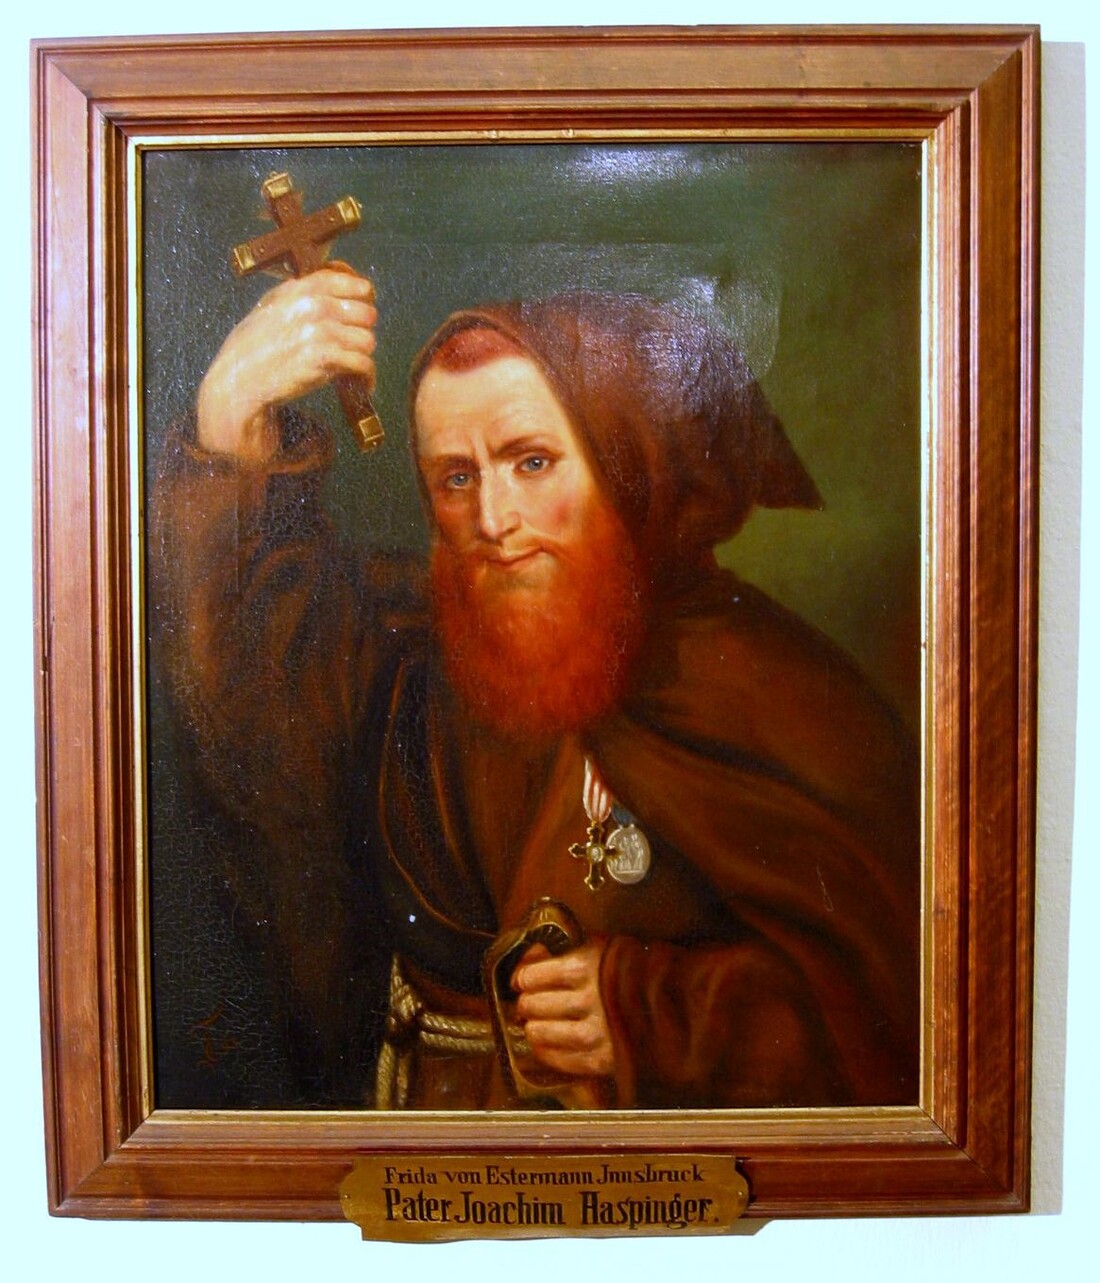 Ein Portrait von Pater Joachim Haspinger aus dem Bestand der Tiroler Kaiserjäger, gemalt von Frieda von Estermann, Öl auf Leinwand.  